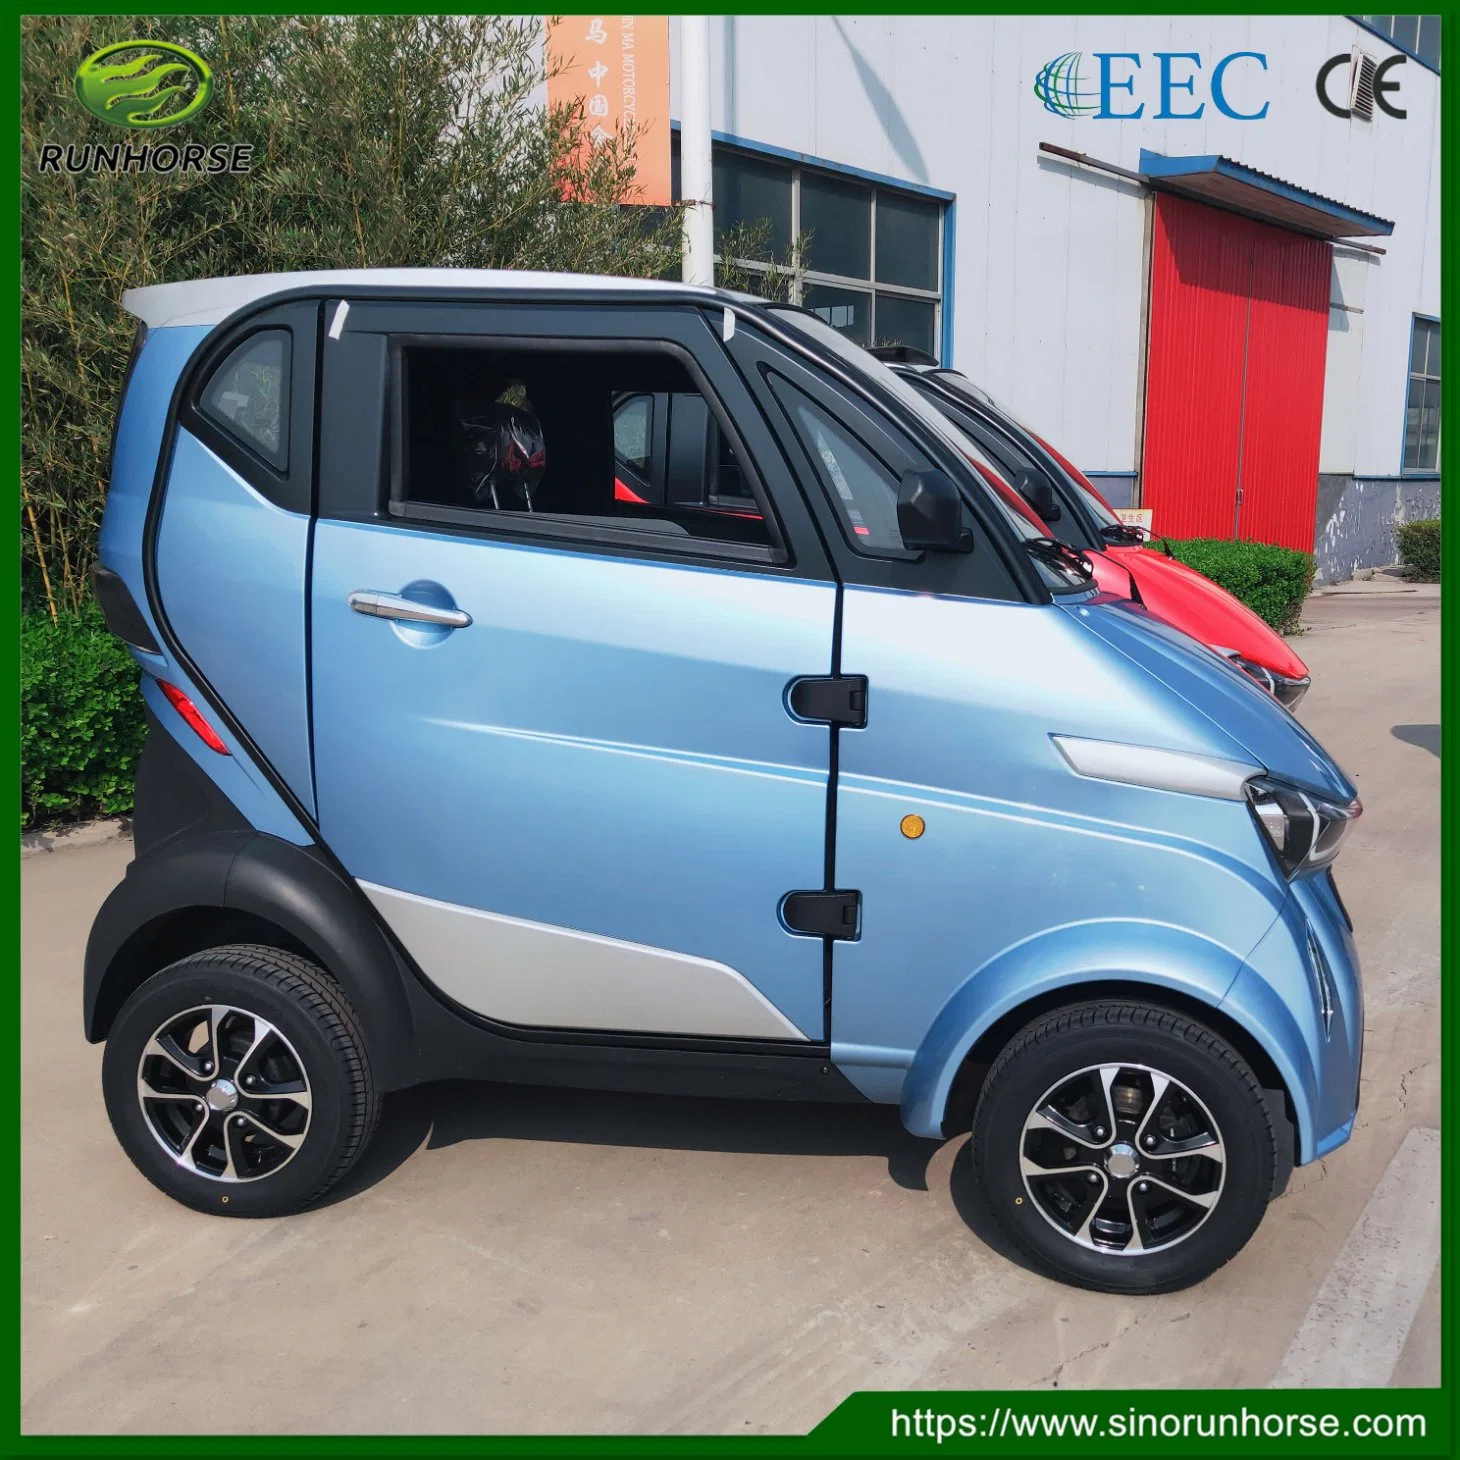 Scooter de movilidad eléctrica con aire acondicionado CEE certificado CE